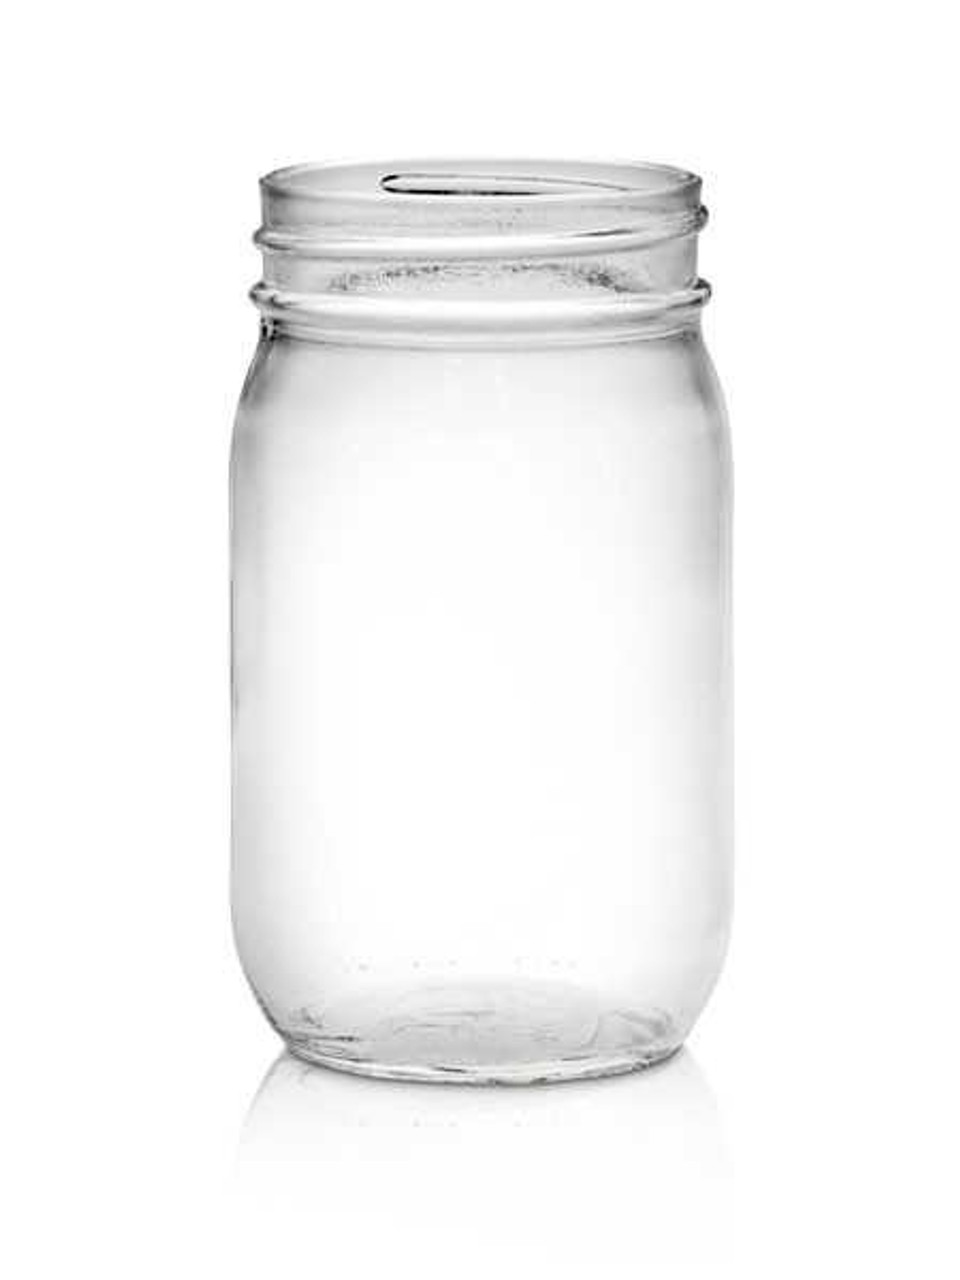 Can glass jar 16 oz – Big Savings Express